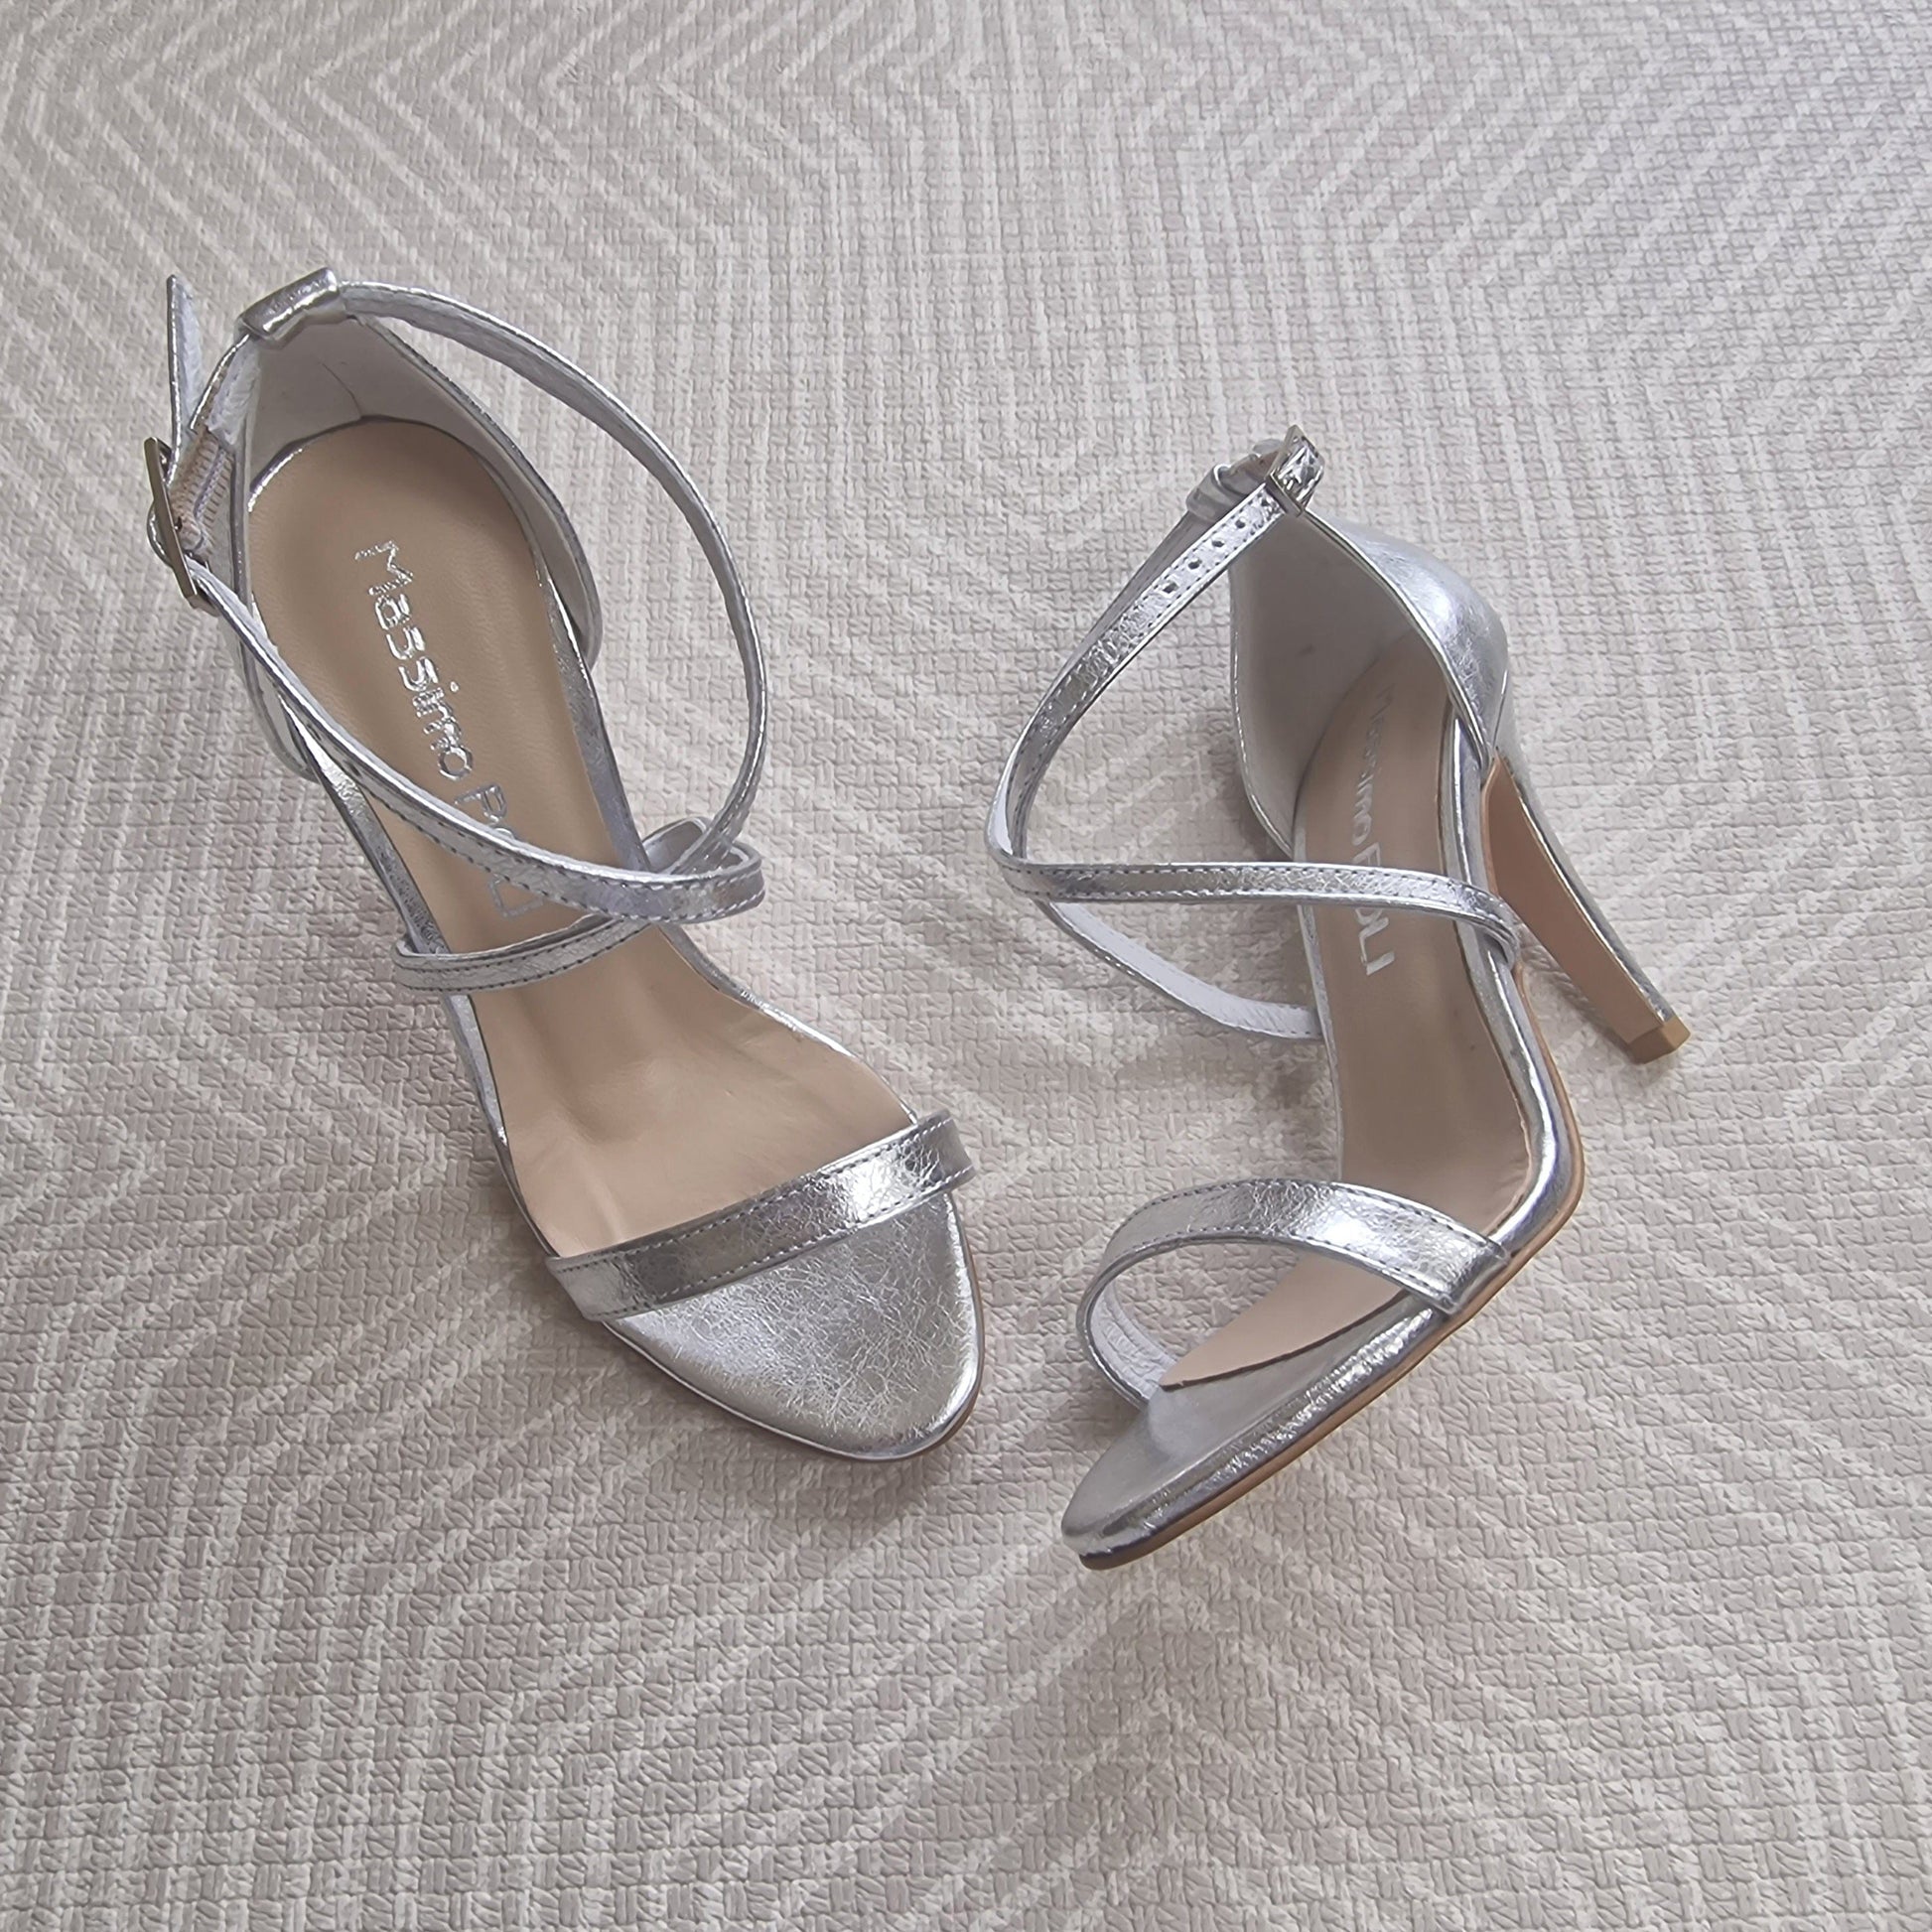 Cross strap silver leather heels